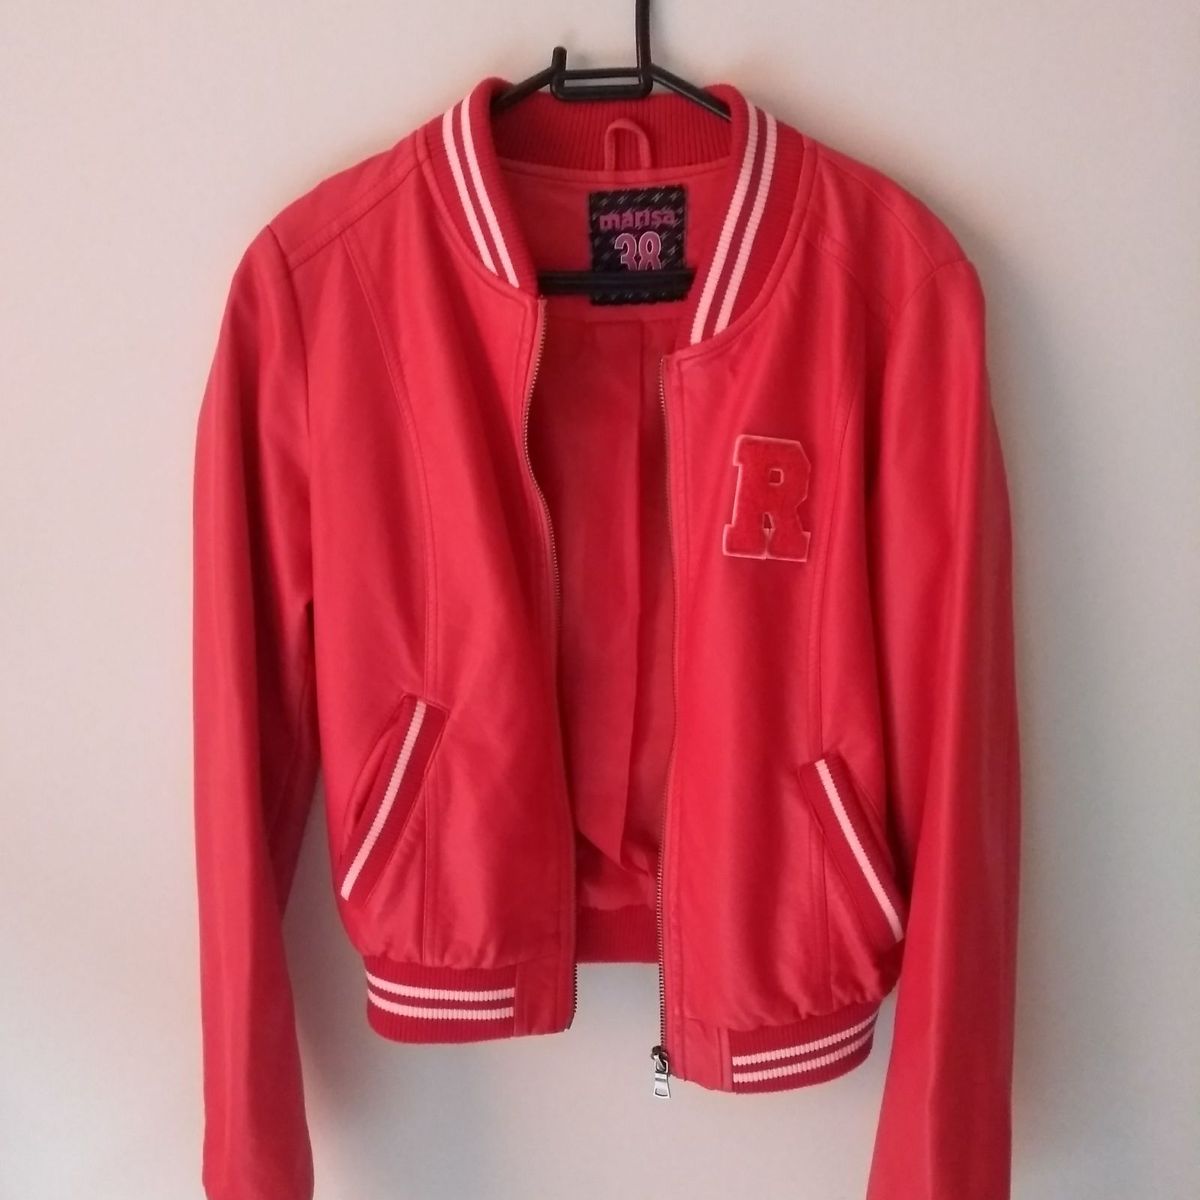 jaqueta college vermelha